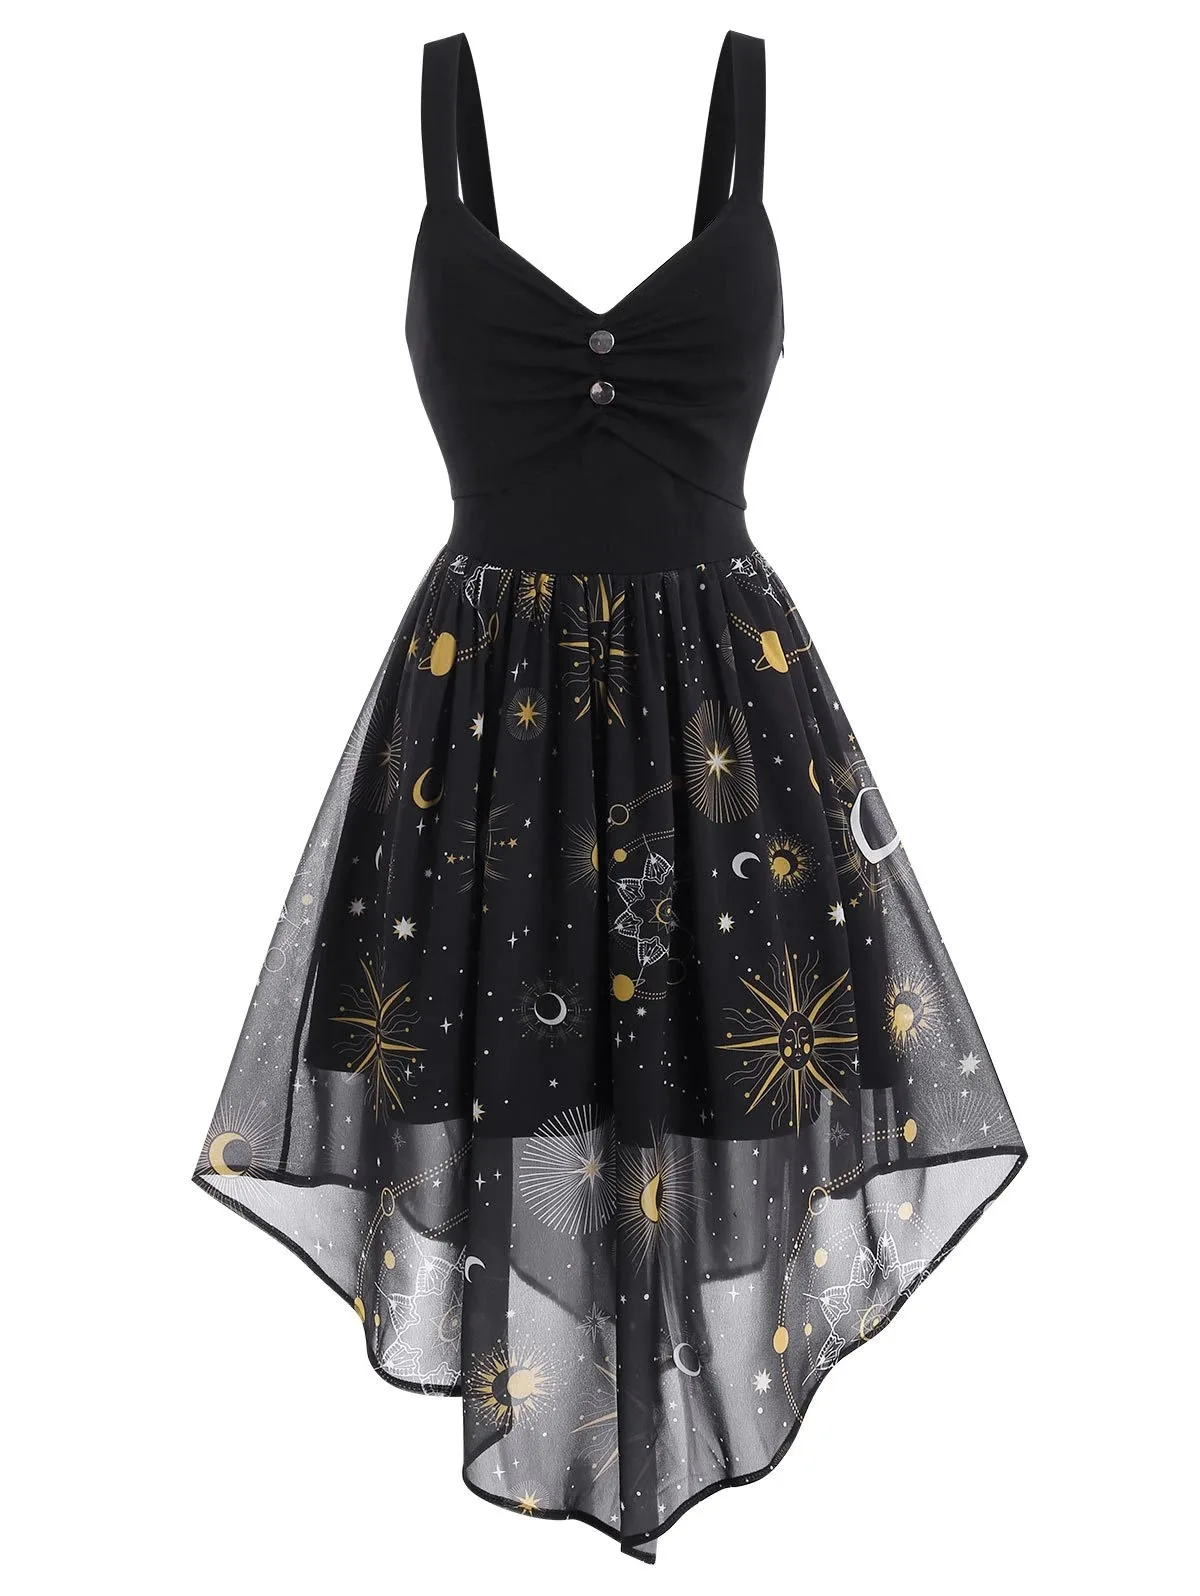 Женское платье на бретелях с принтом звезд Хэллоуин 2021 | Женская одежда